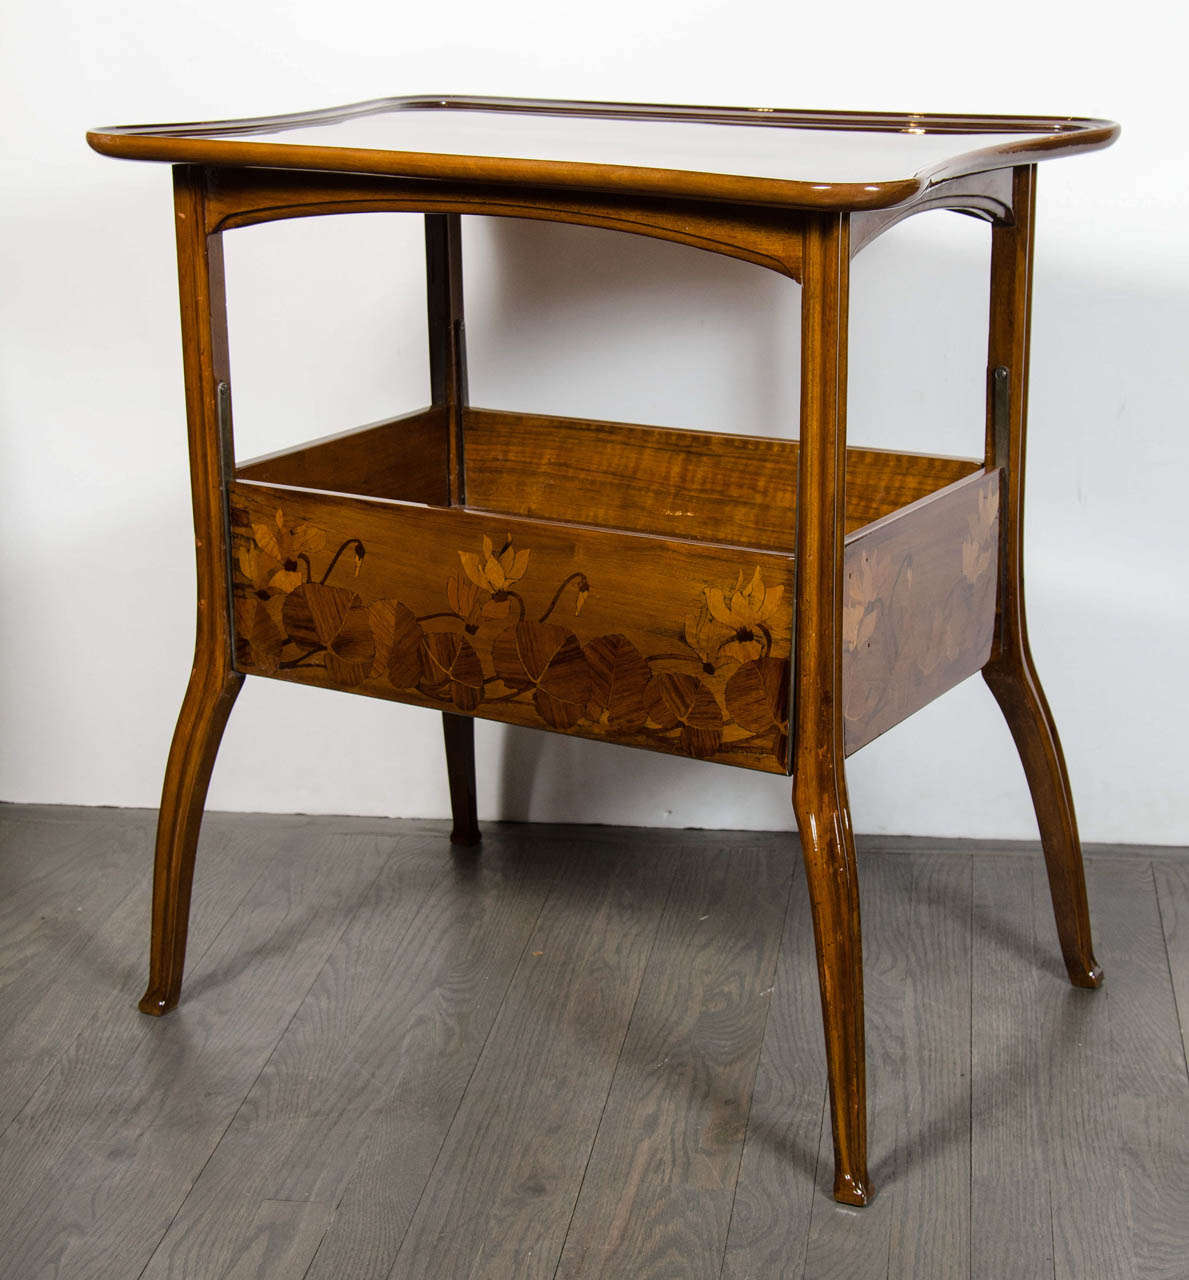 20th Century Exquisite Art Nouveau Carved Walnut Tea Table by Louis Majorelle